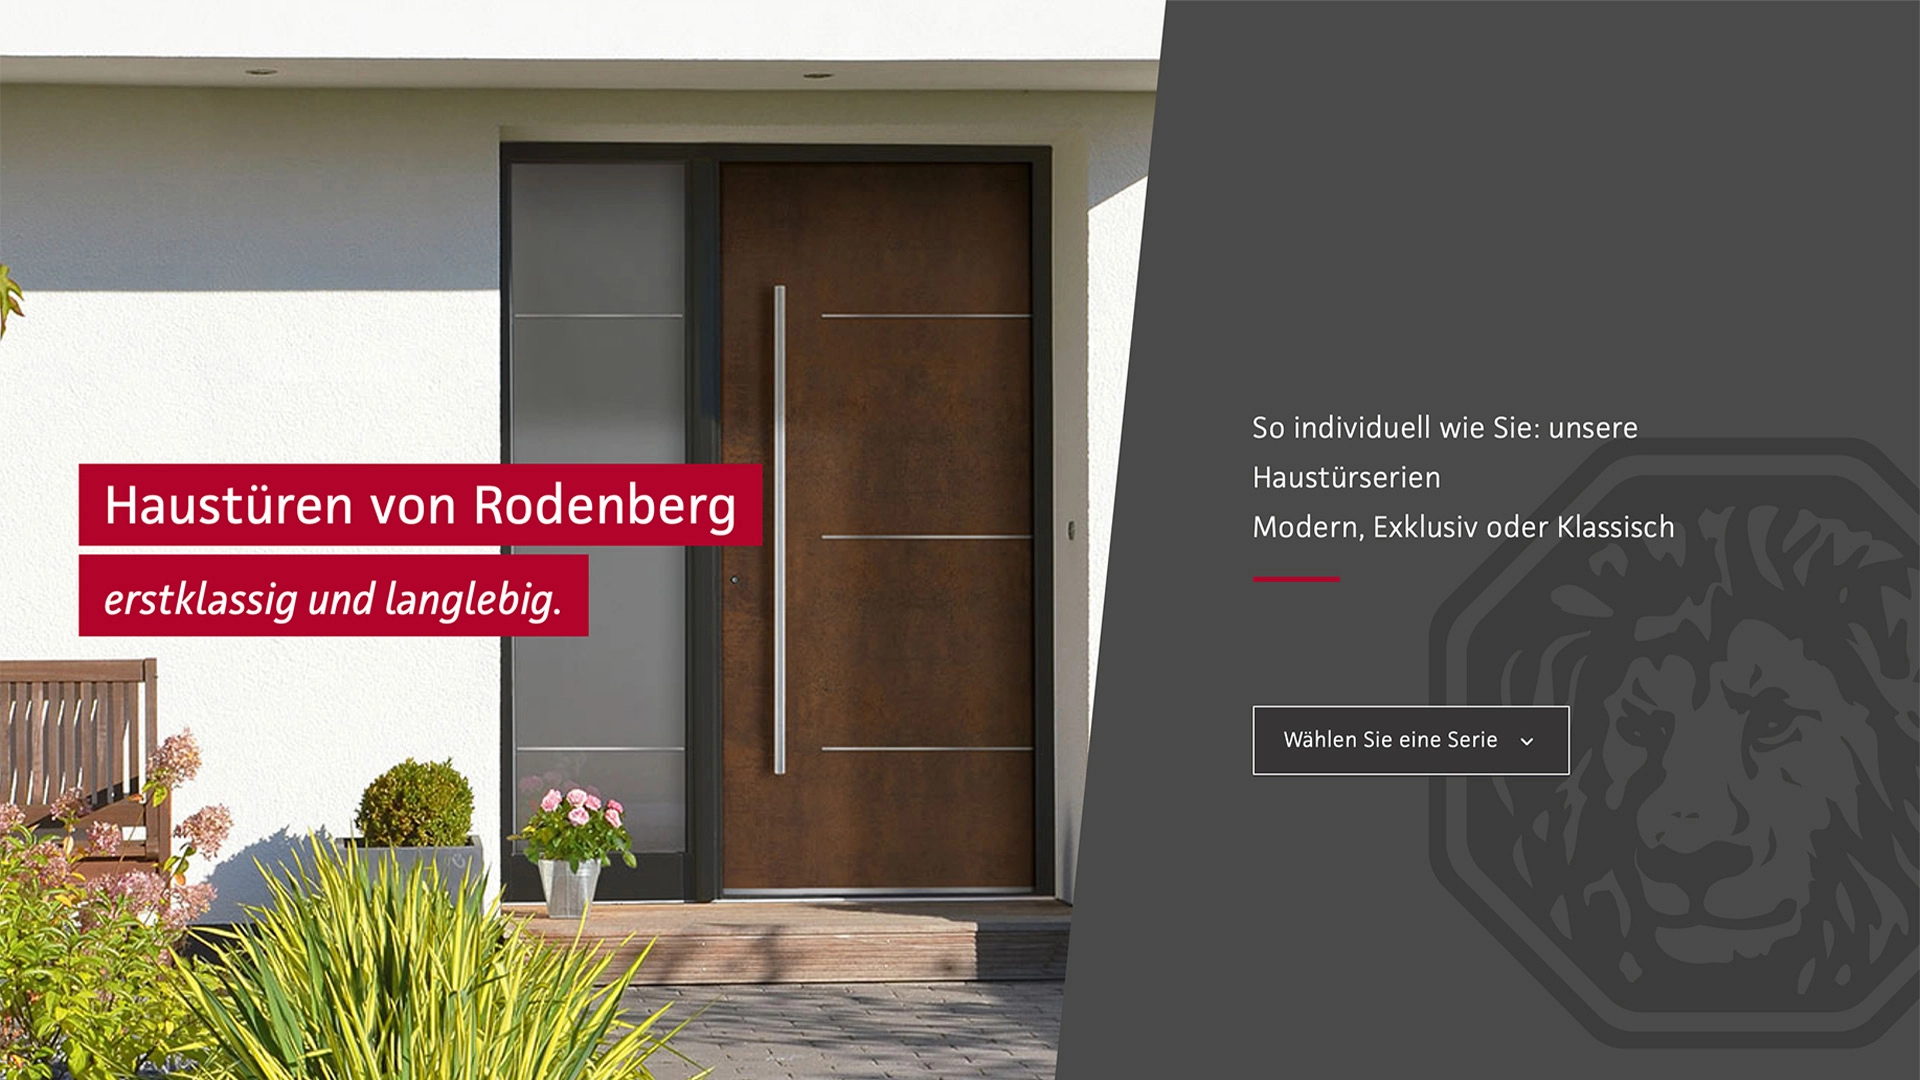 Startseite von Rodenberg, welche eine Haustür und die dazugehörige Headline zeigt: Haustüren von Rodenberg. Erstklassig und langlebig